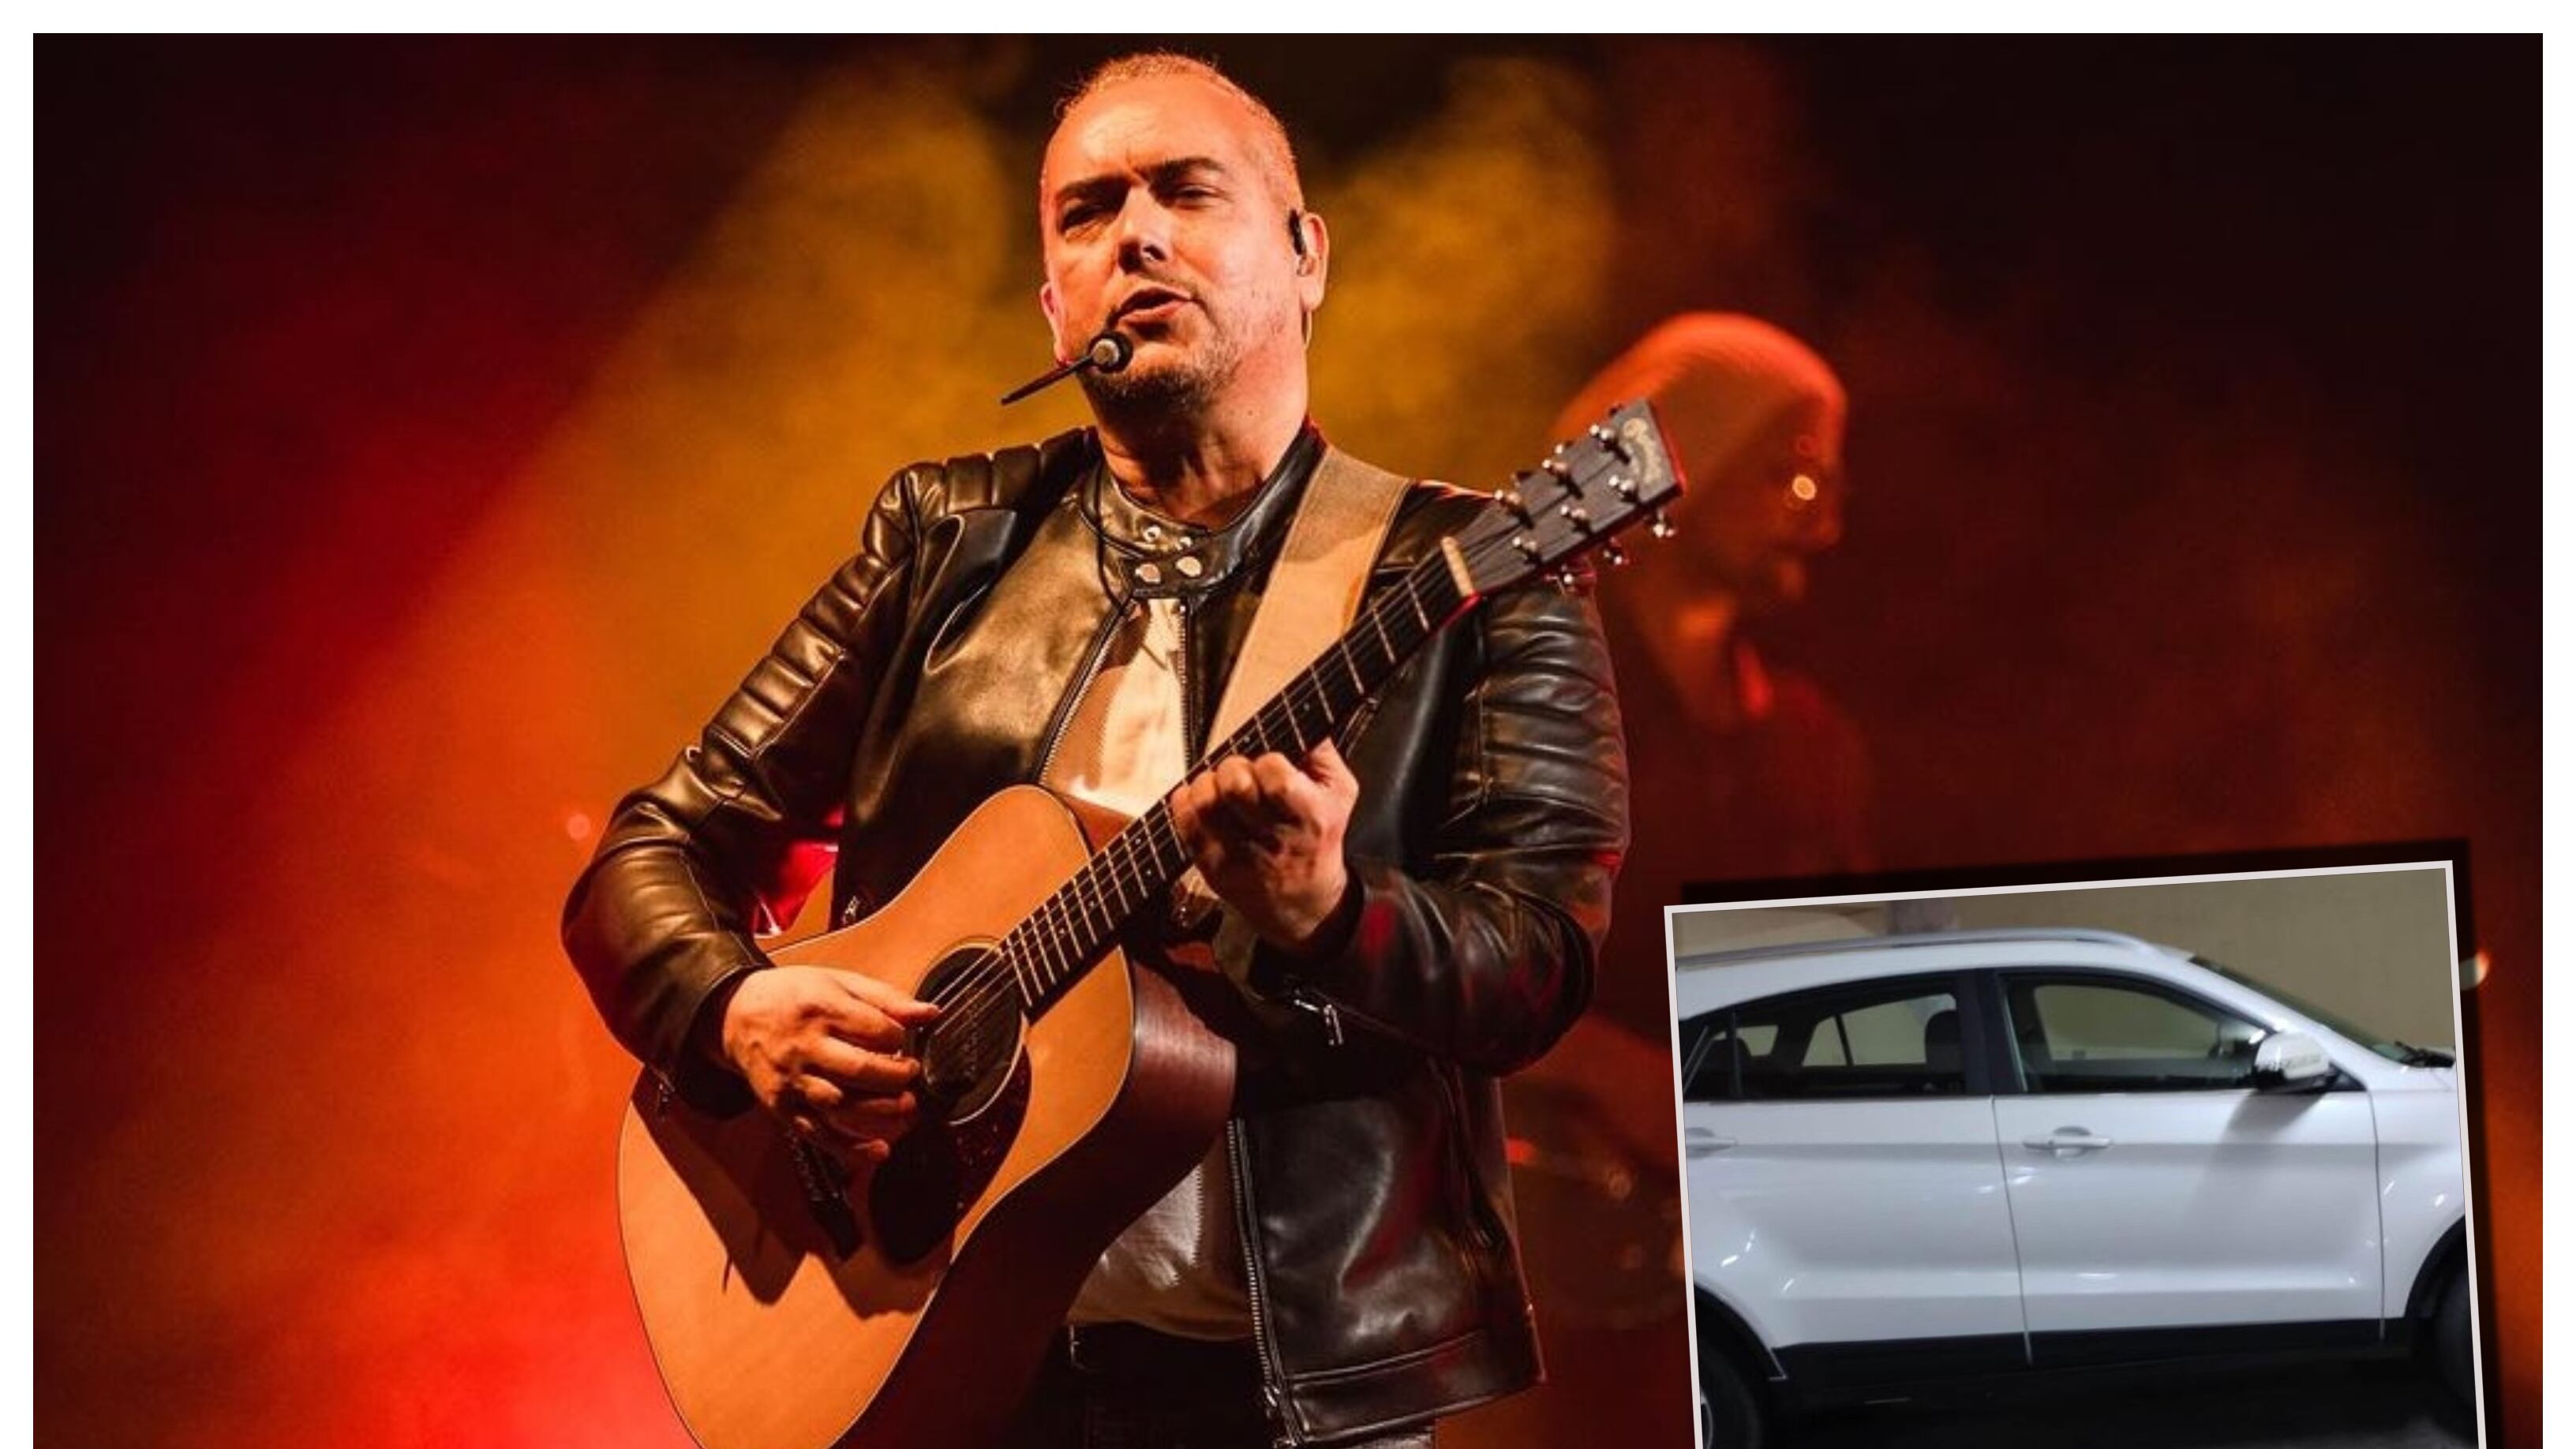 El productor musical y guitarrista de la banda "Natalino" reveló que aún sigue sin recuperar las pertenencias robadas en la encerrona que le hicieron hace poco menos de dos semanas.